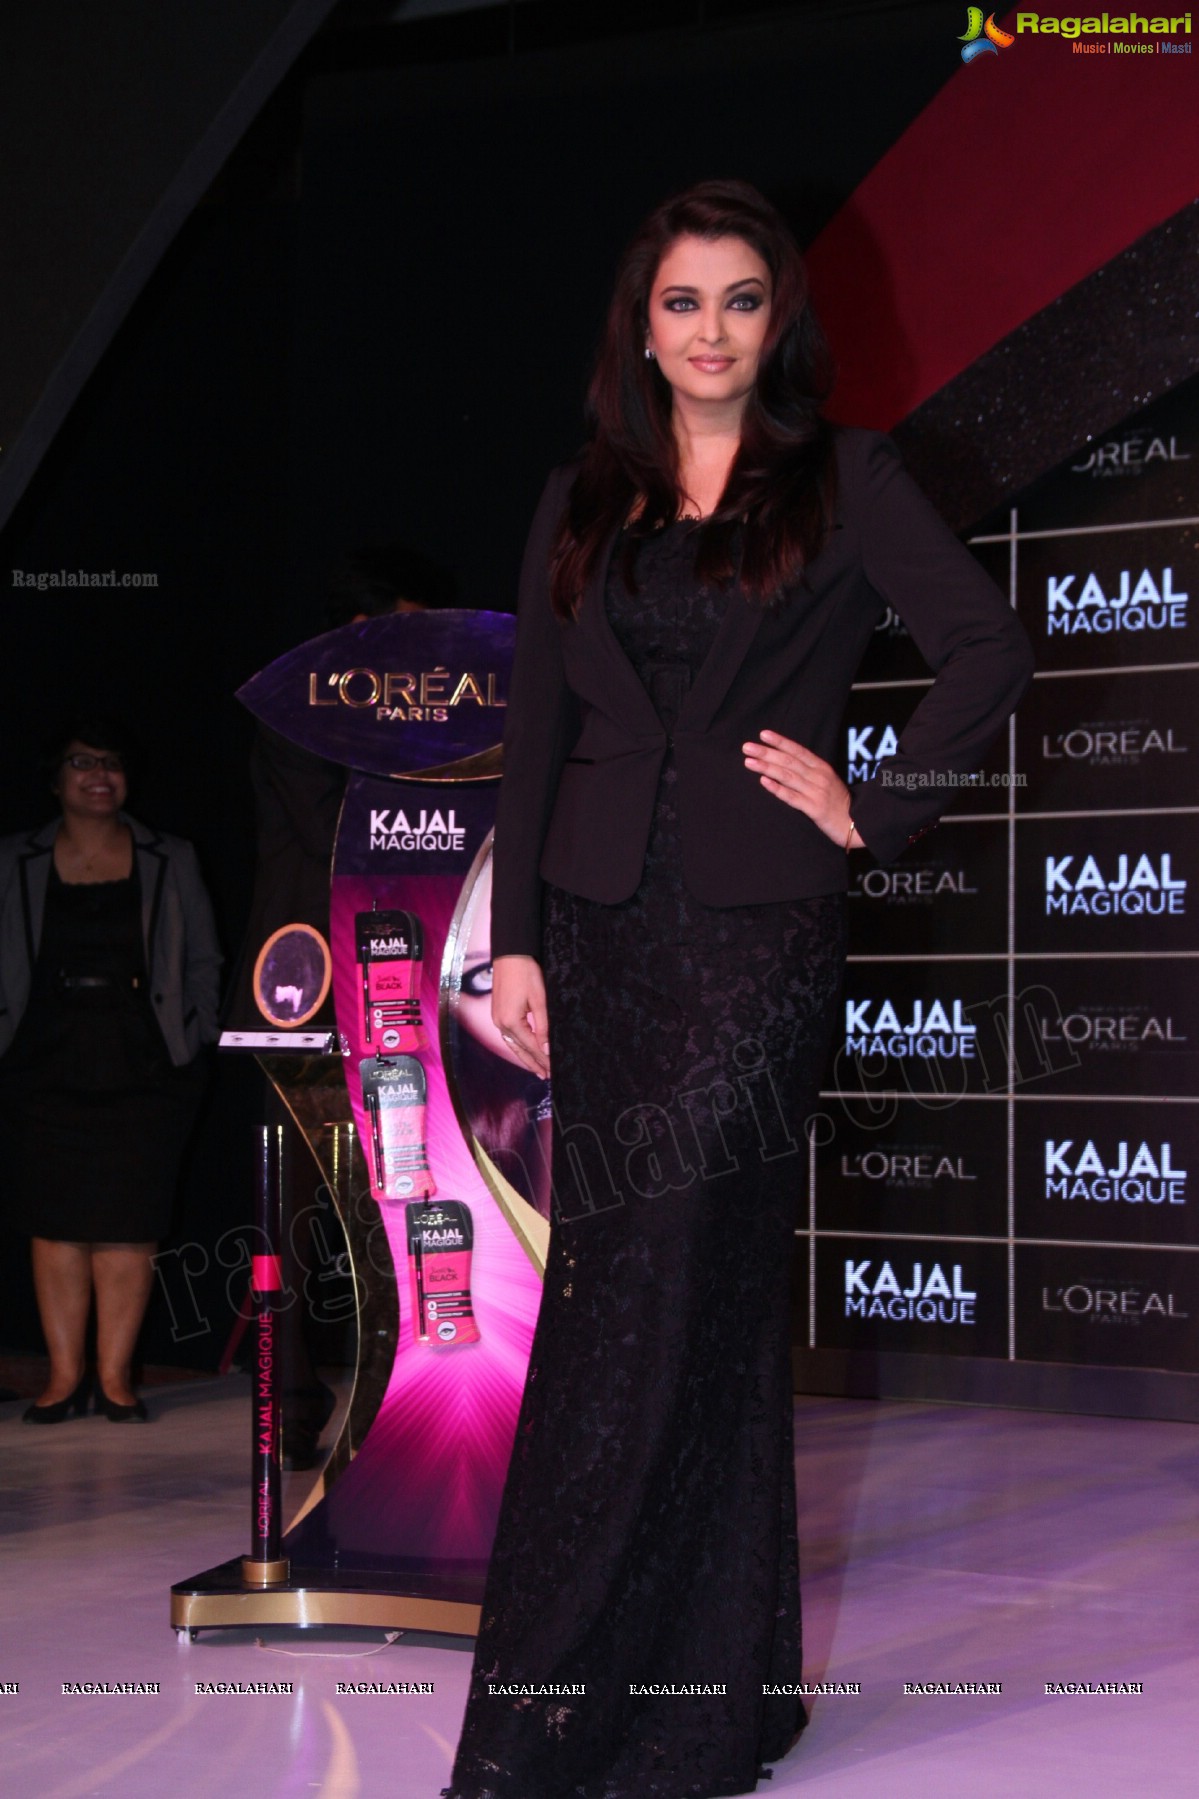 L'Oréal Paris launches Kajal Magique with Aishwarya Rai Bachchan